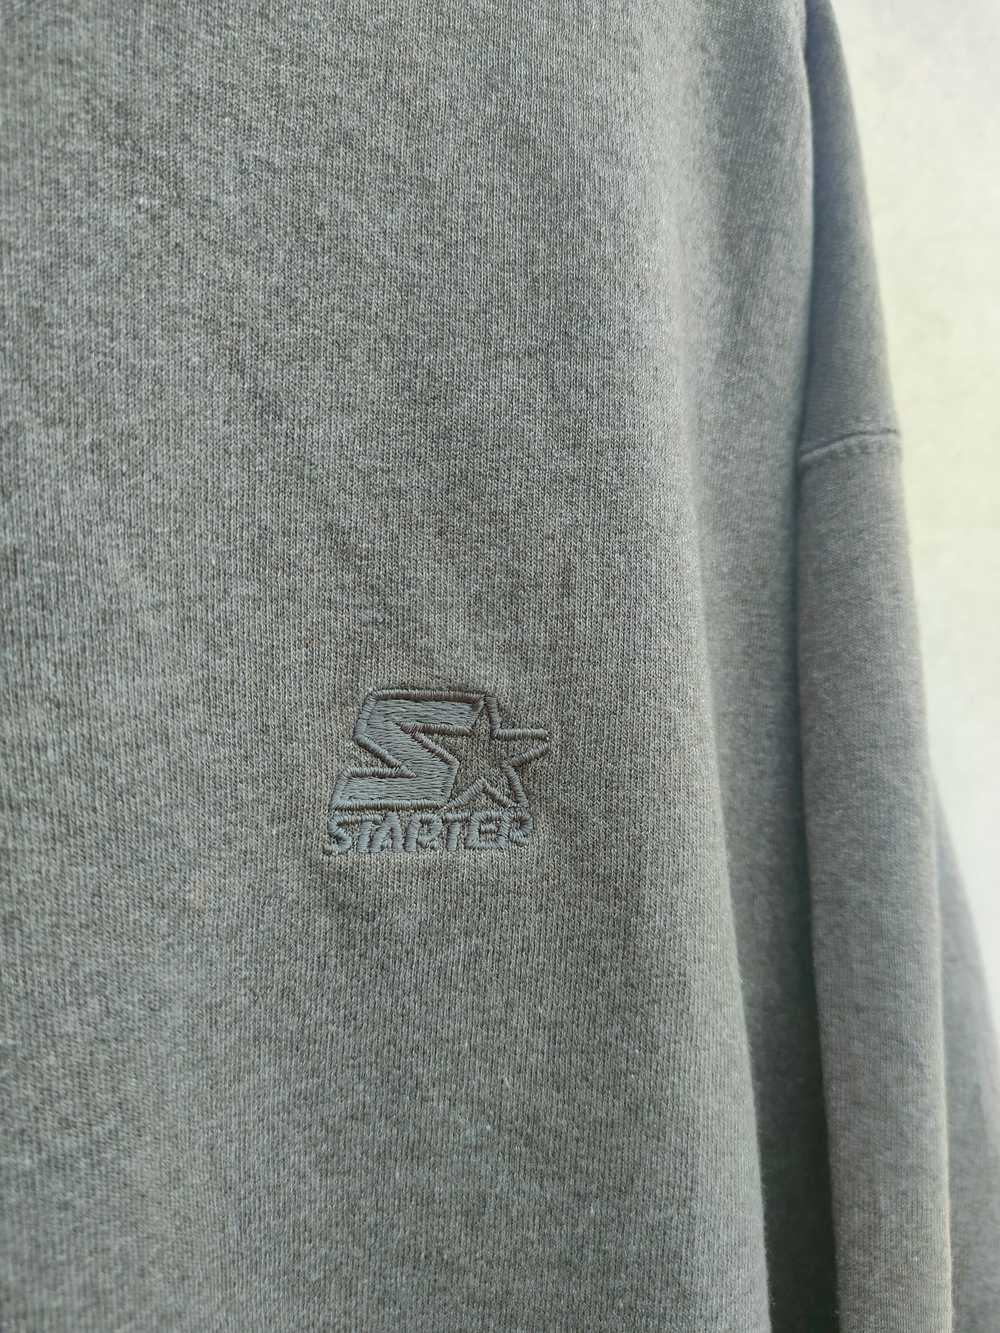 Starter × Streetwear × Vintage ⚡STEALS⚡Vintage St… - image 5